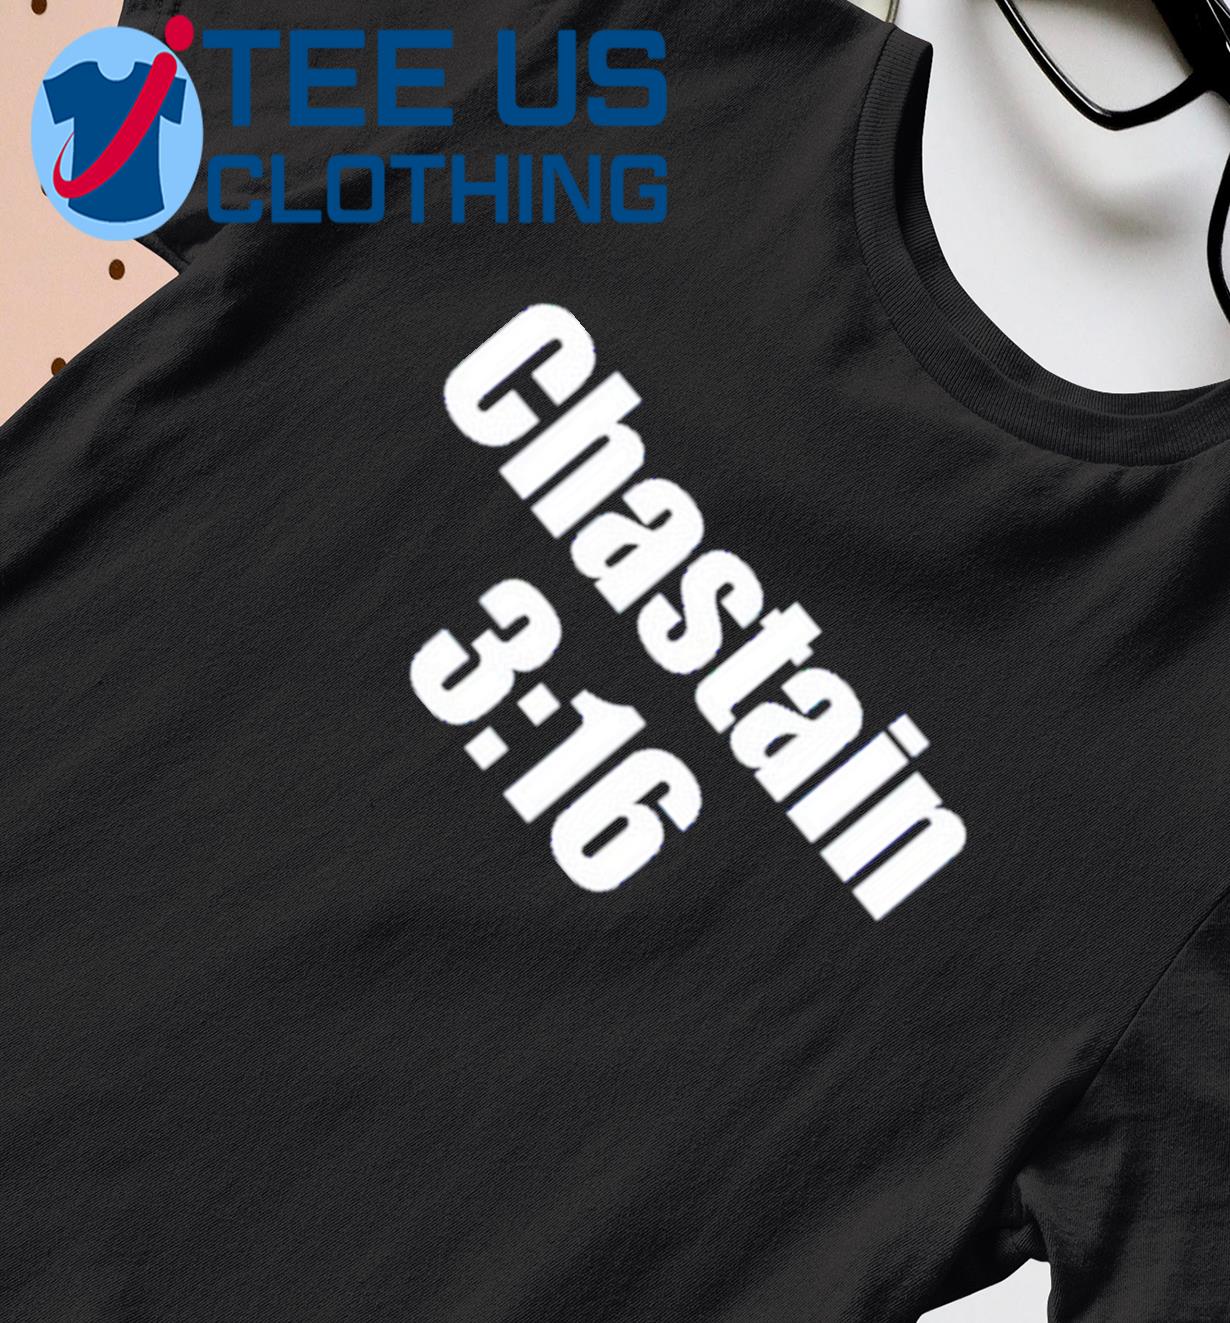 Chastain 316 Classic Shirt